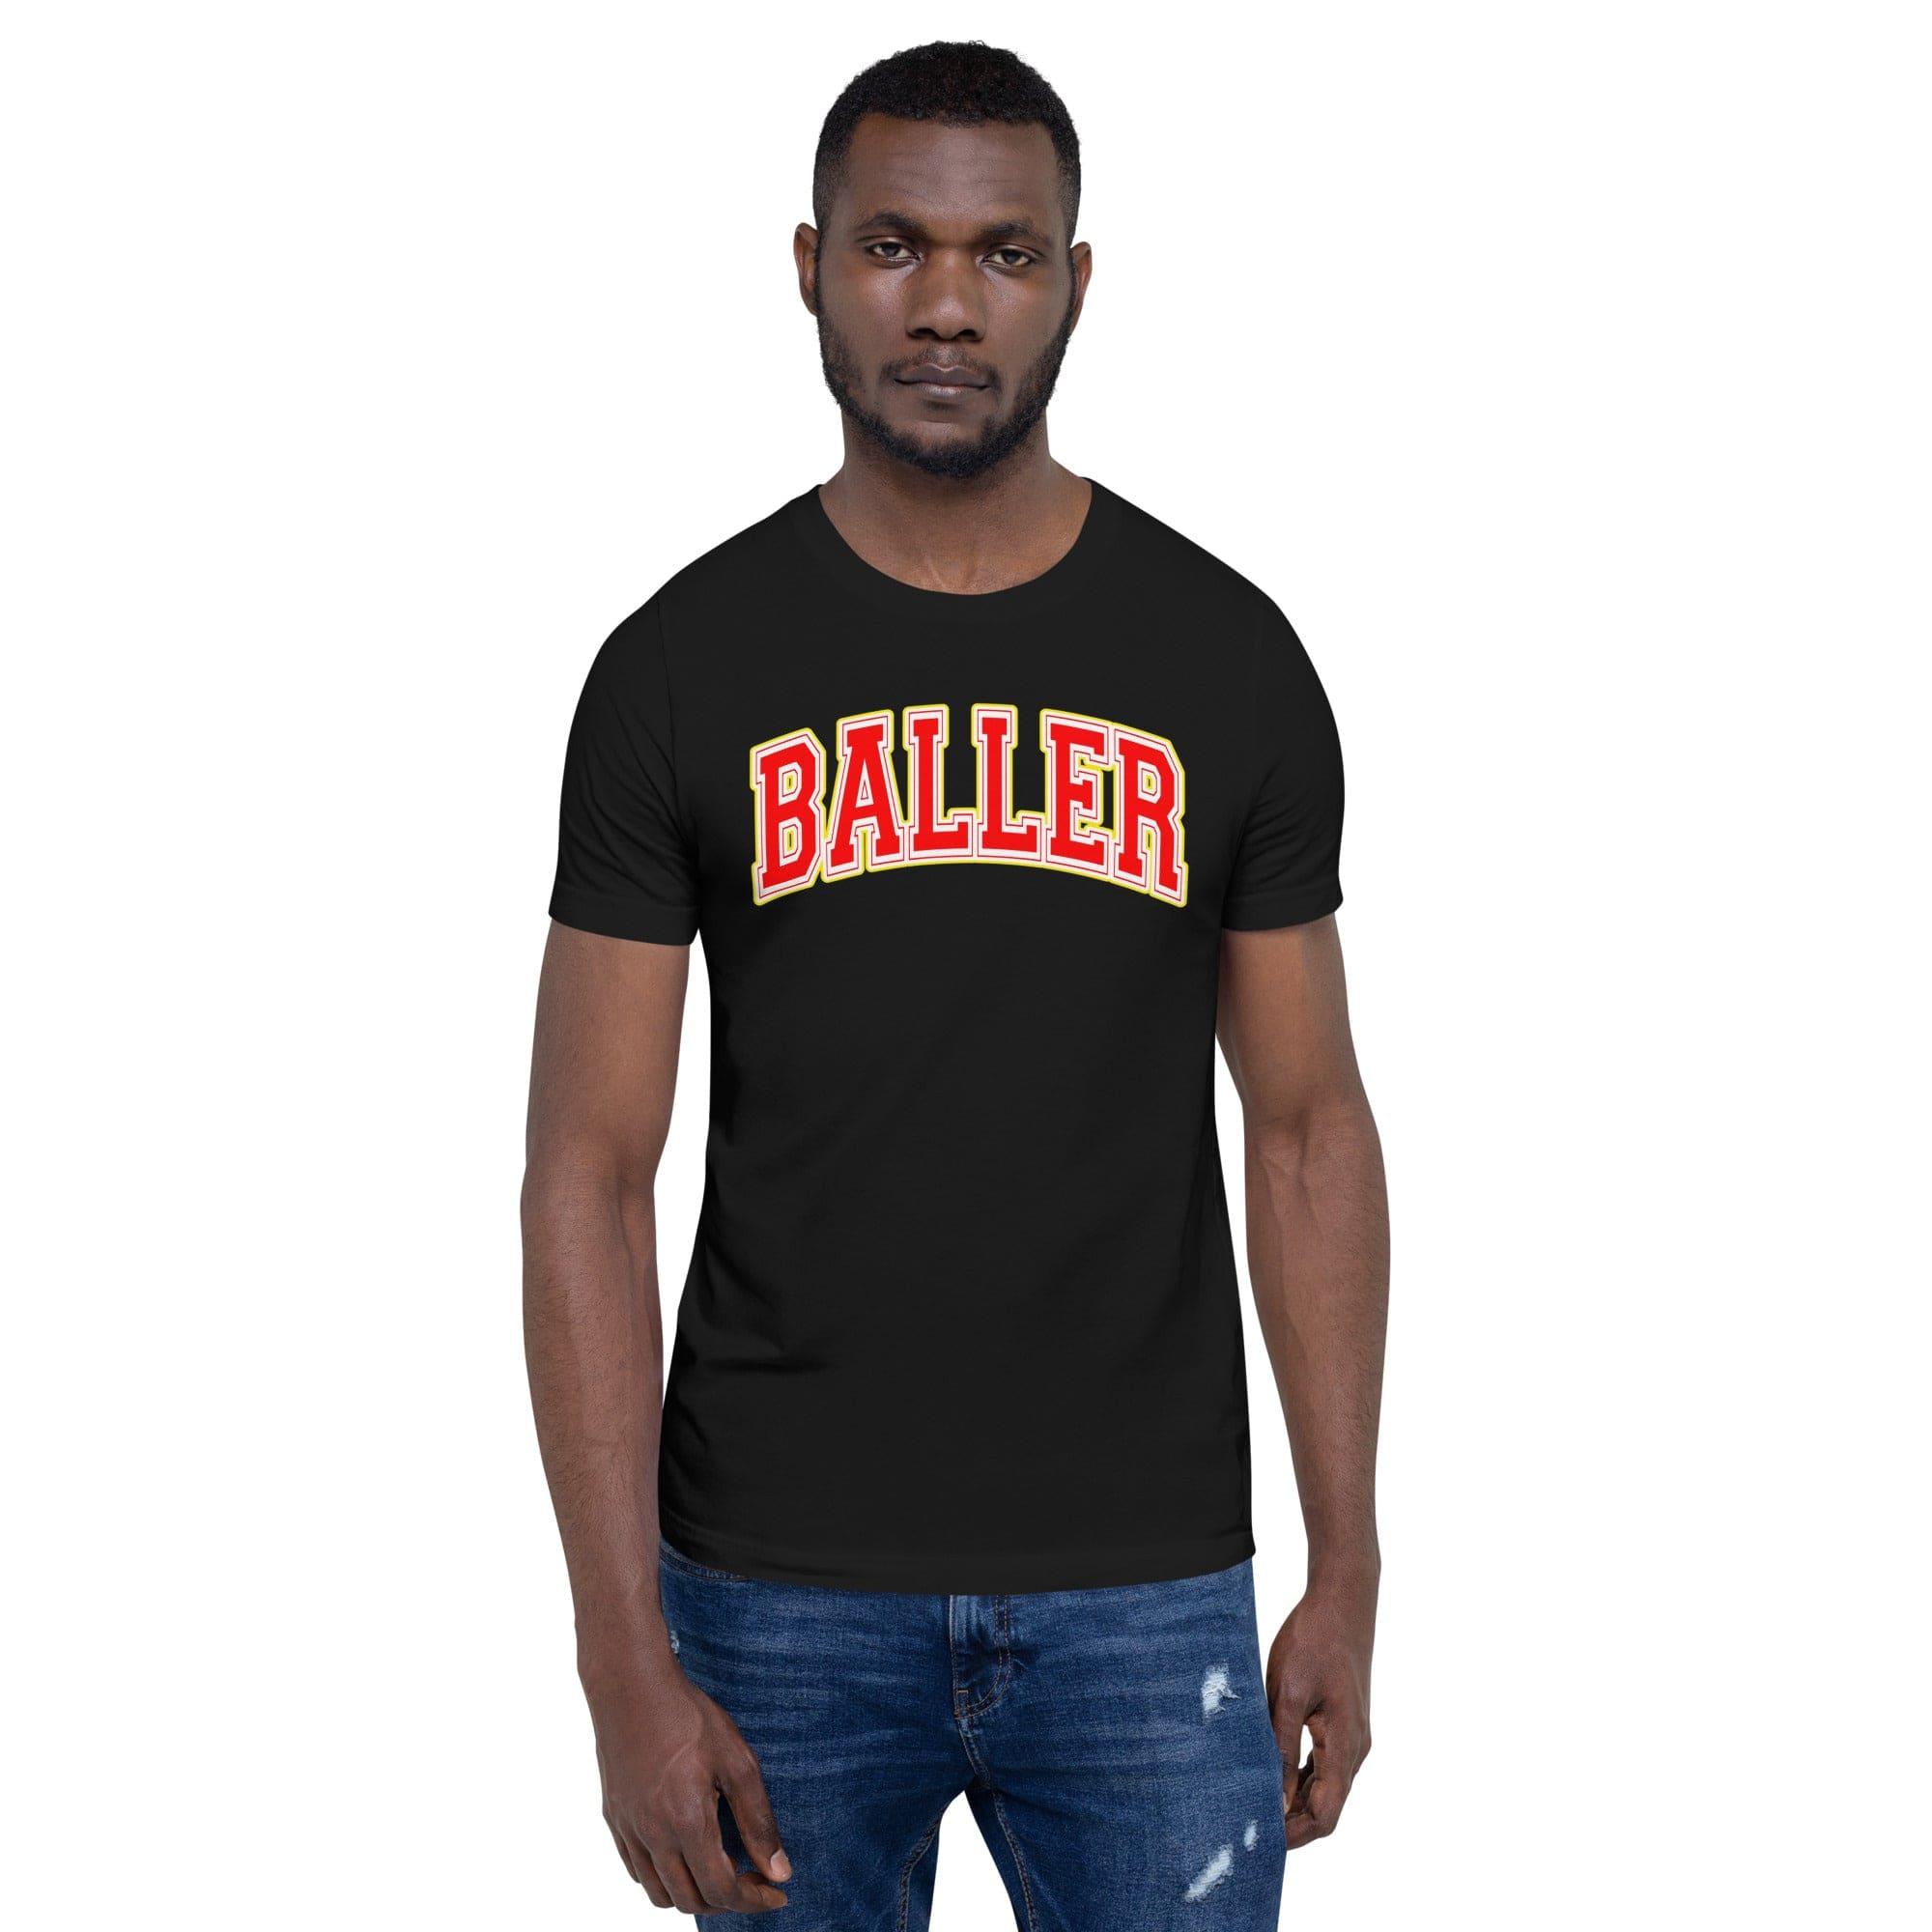 Urban T-shirt Baller Short Sleeve Unisex Top - TopKoalaTee